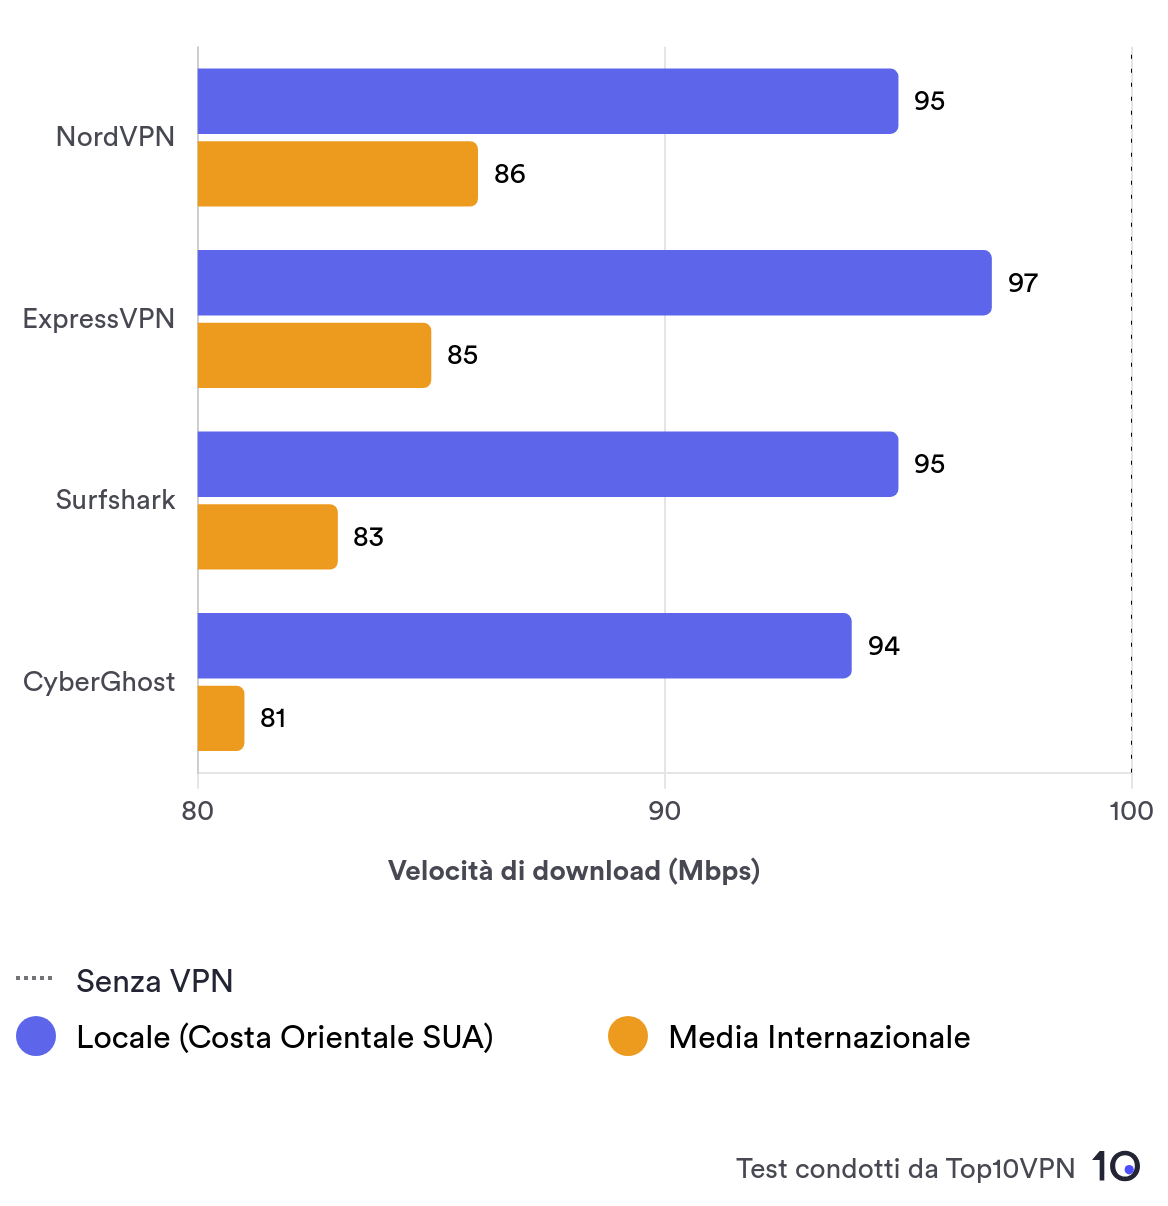 Grafico a barre di confronto che mostra le prestazioni di NordVPN in termini di velocità locale e media internazionale rispetto alle altre migliori VPN.